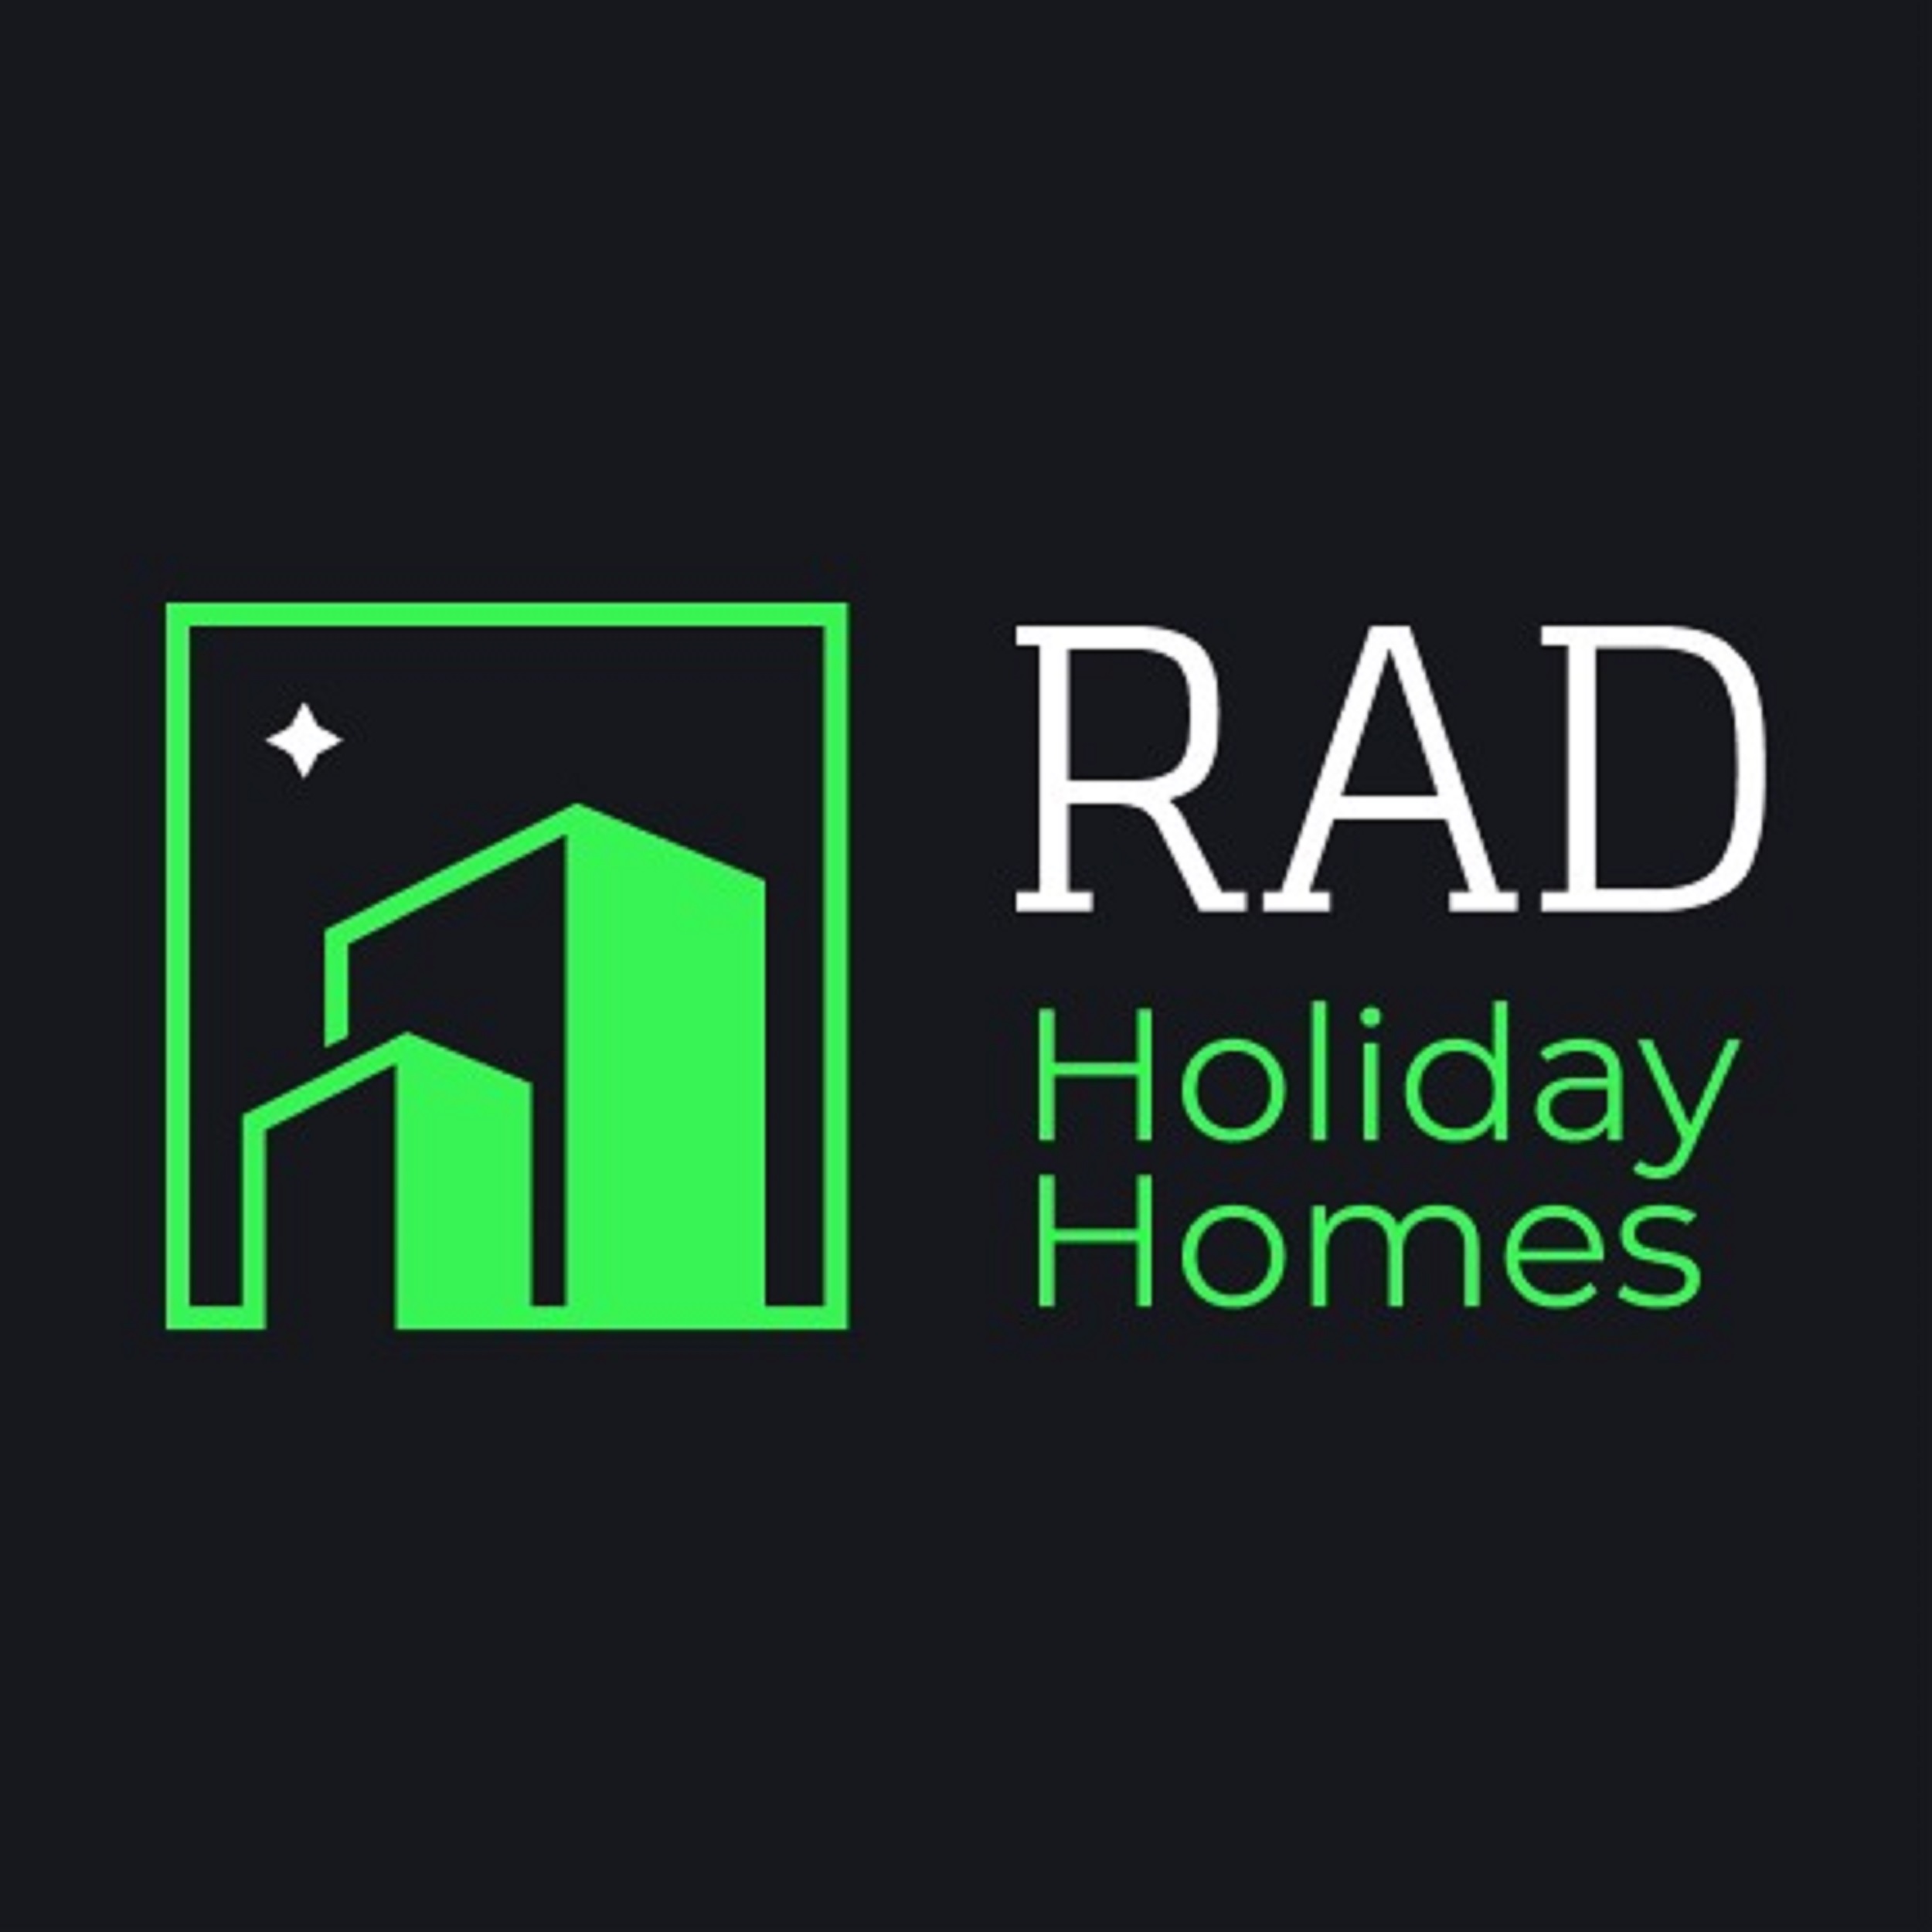 Rad Holiday Homes